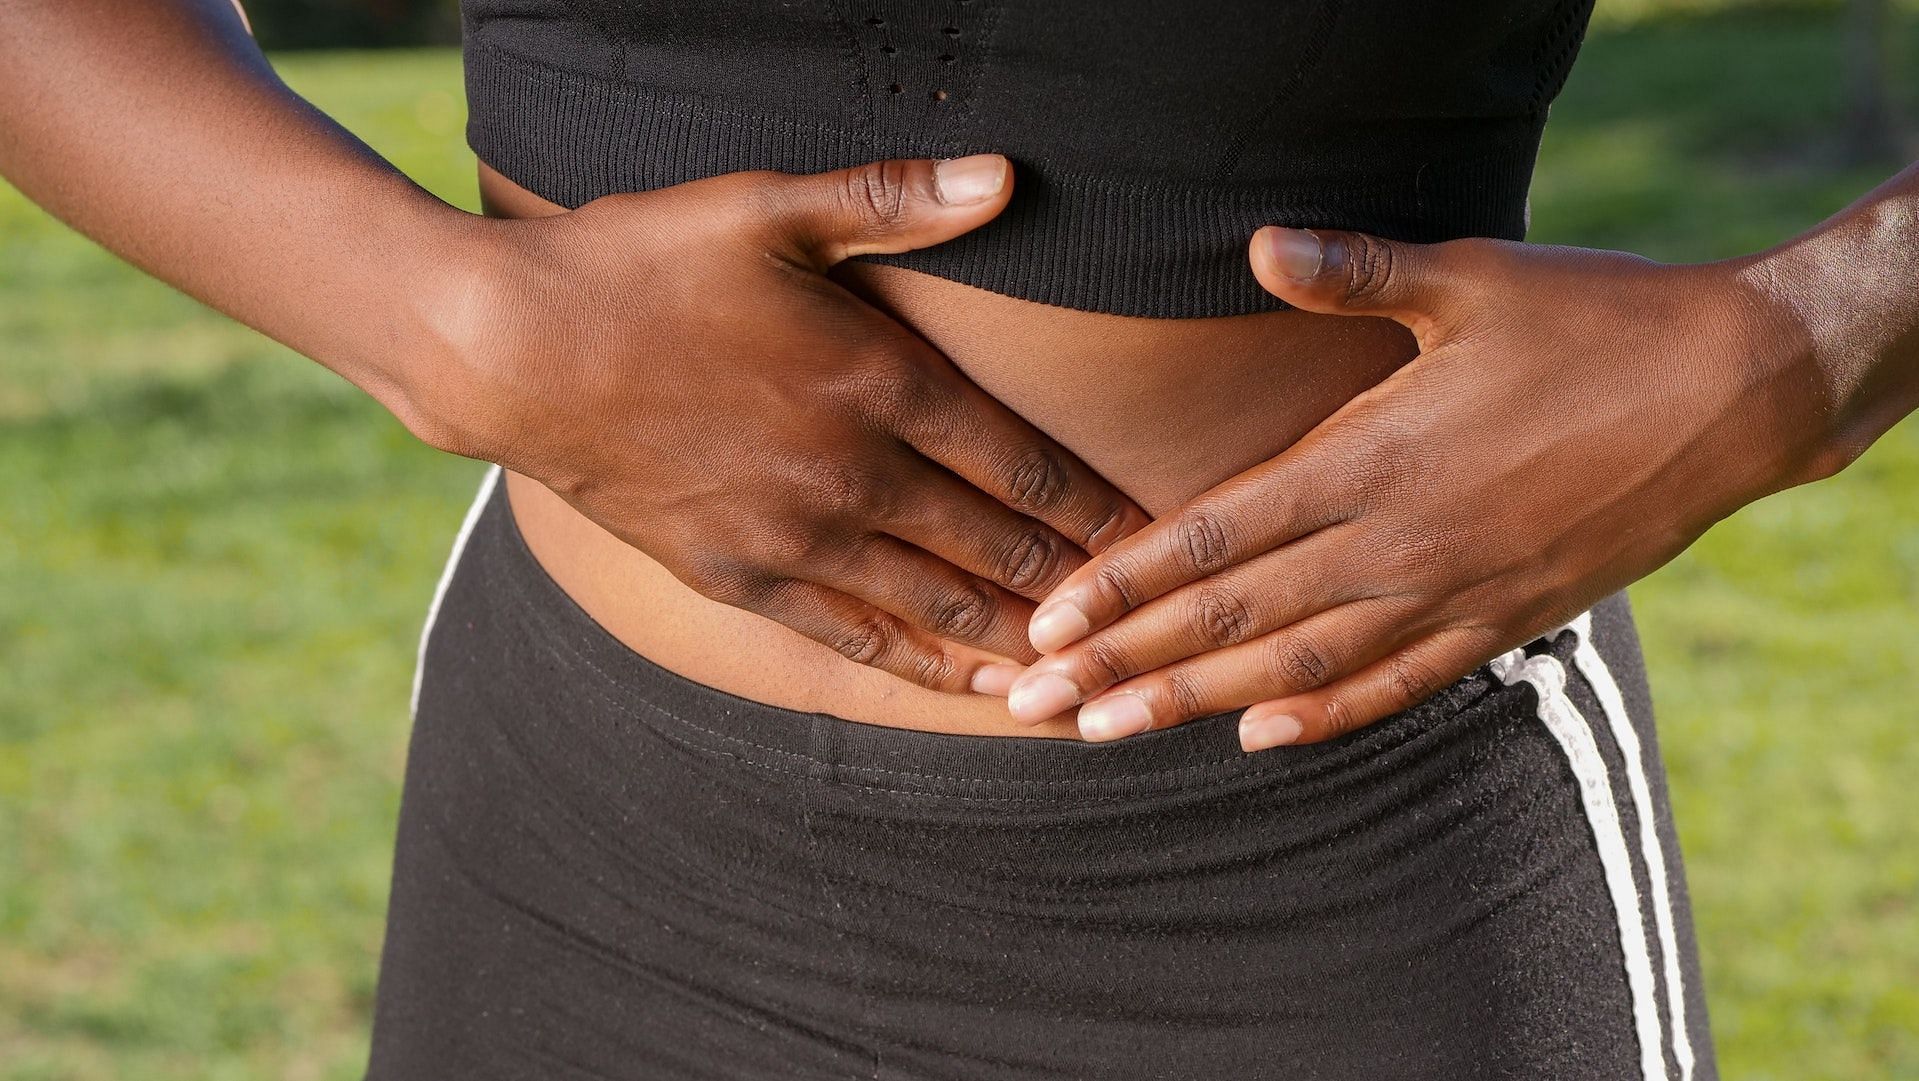 Diastasis recti is a common condition among pregnant women. (Photo via Pexels/Kindel Media)